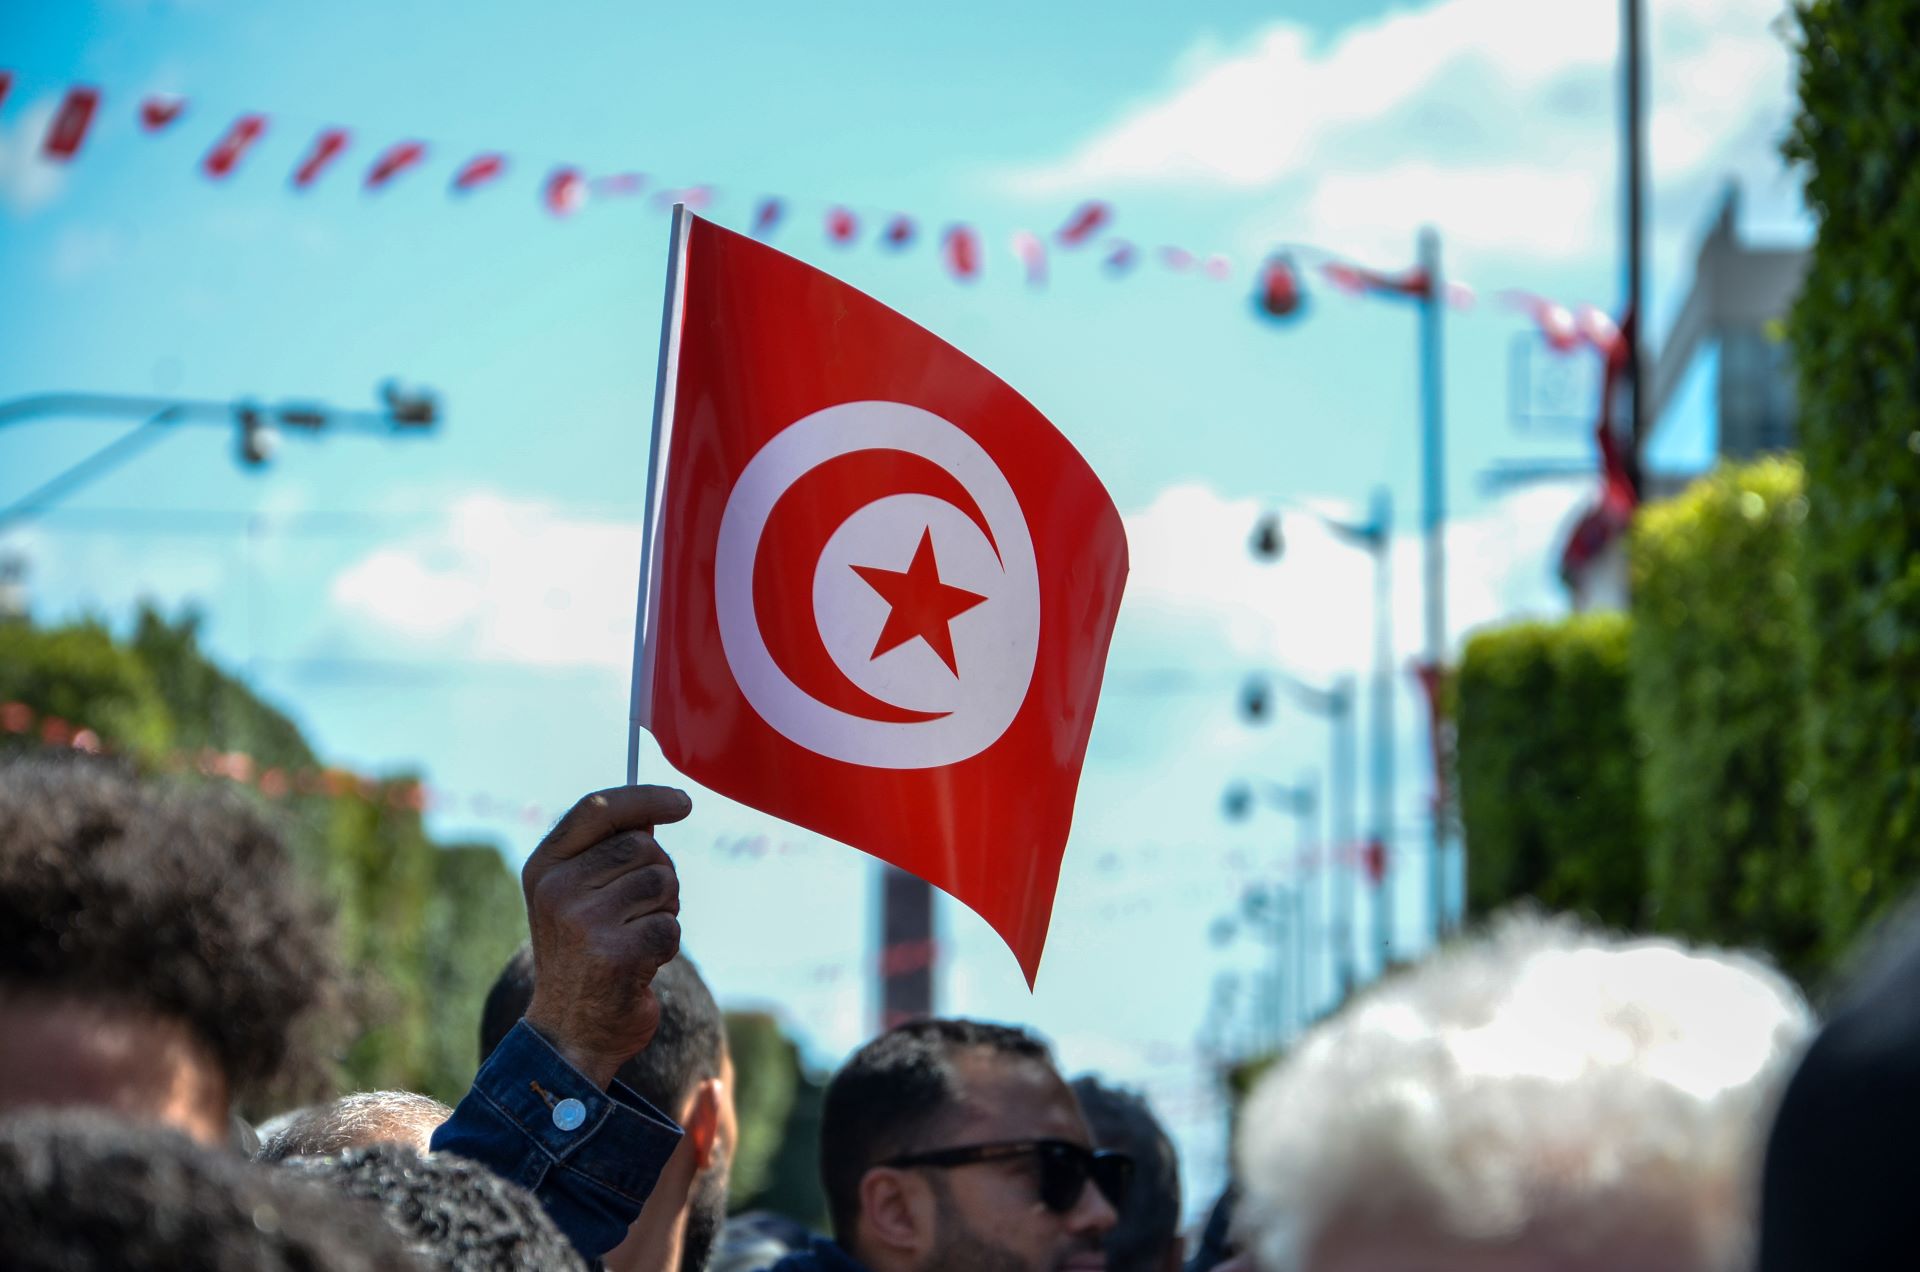 تقسيم تونس لـ5 أقاليم .. جدل واسع بعد قرار قيس سعيد وحديث عن "احتلال فرنسي"